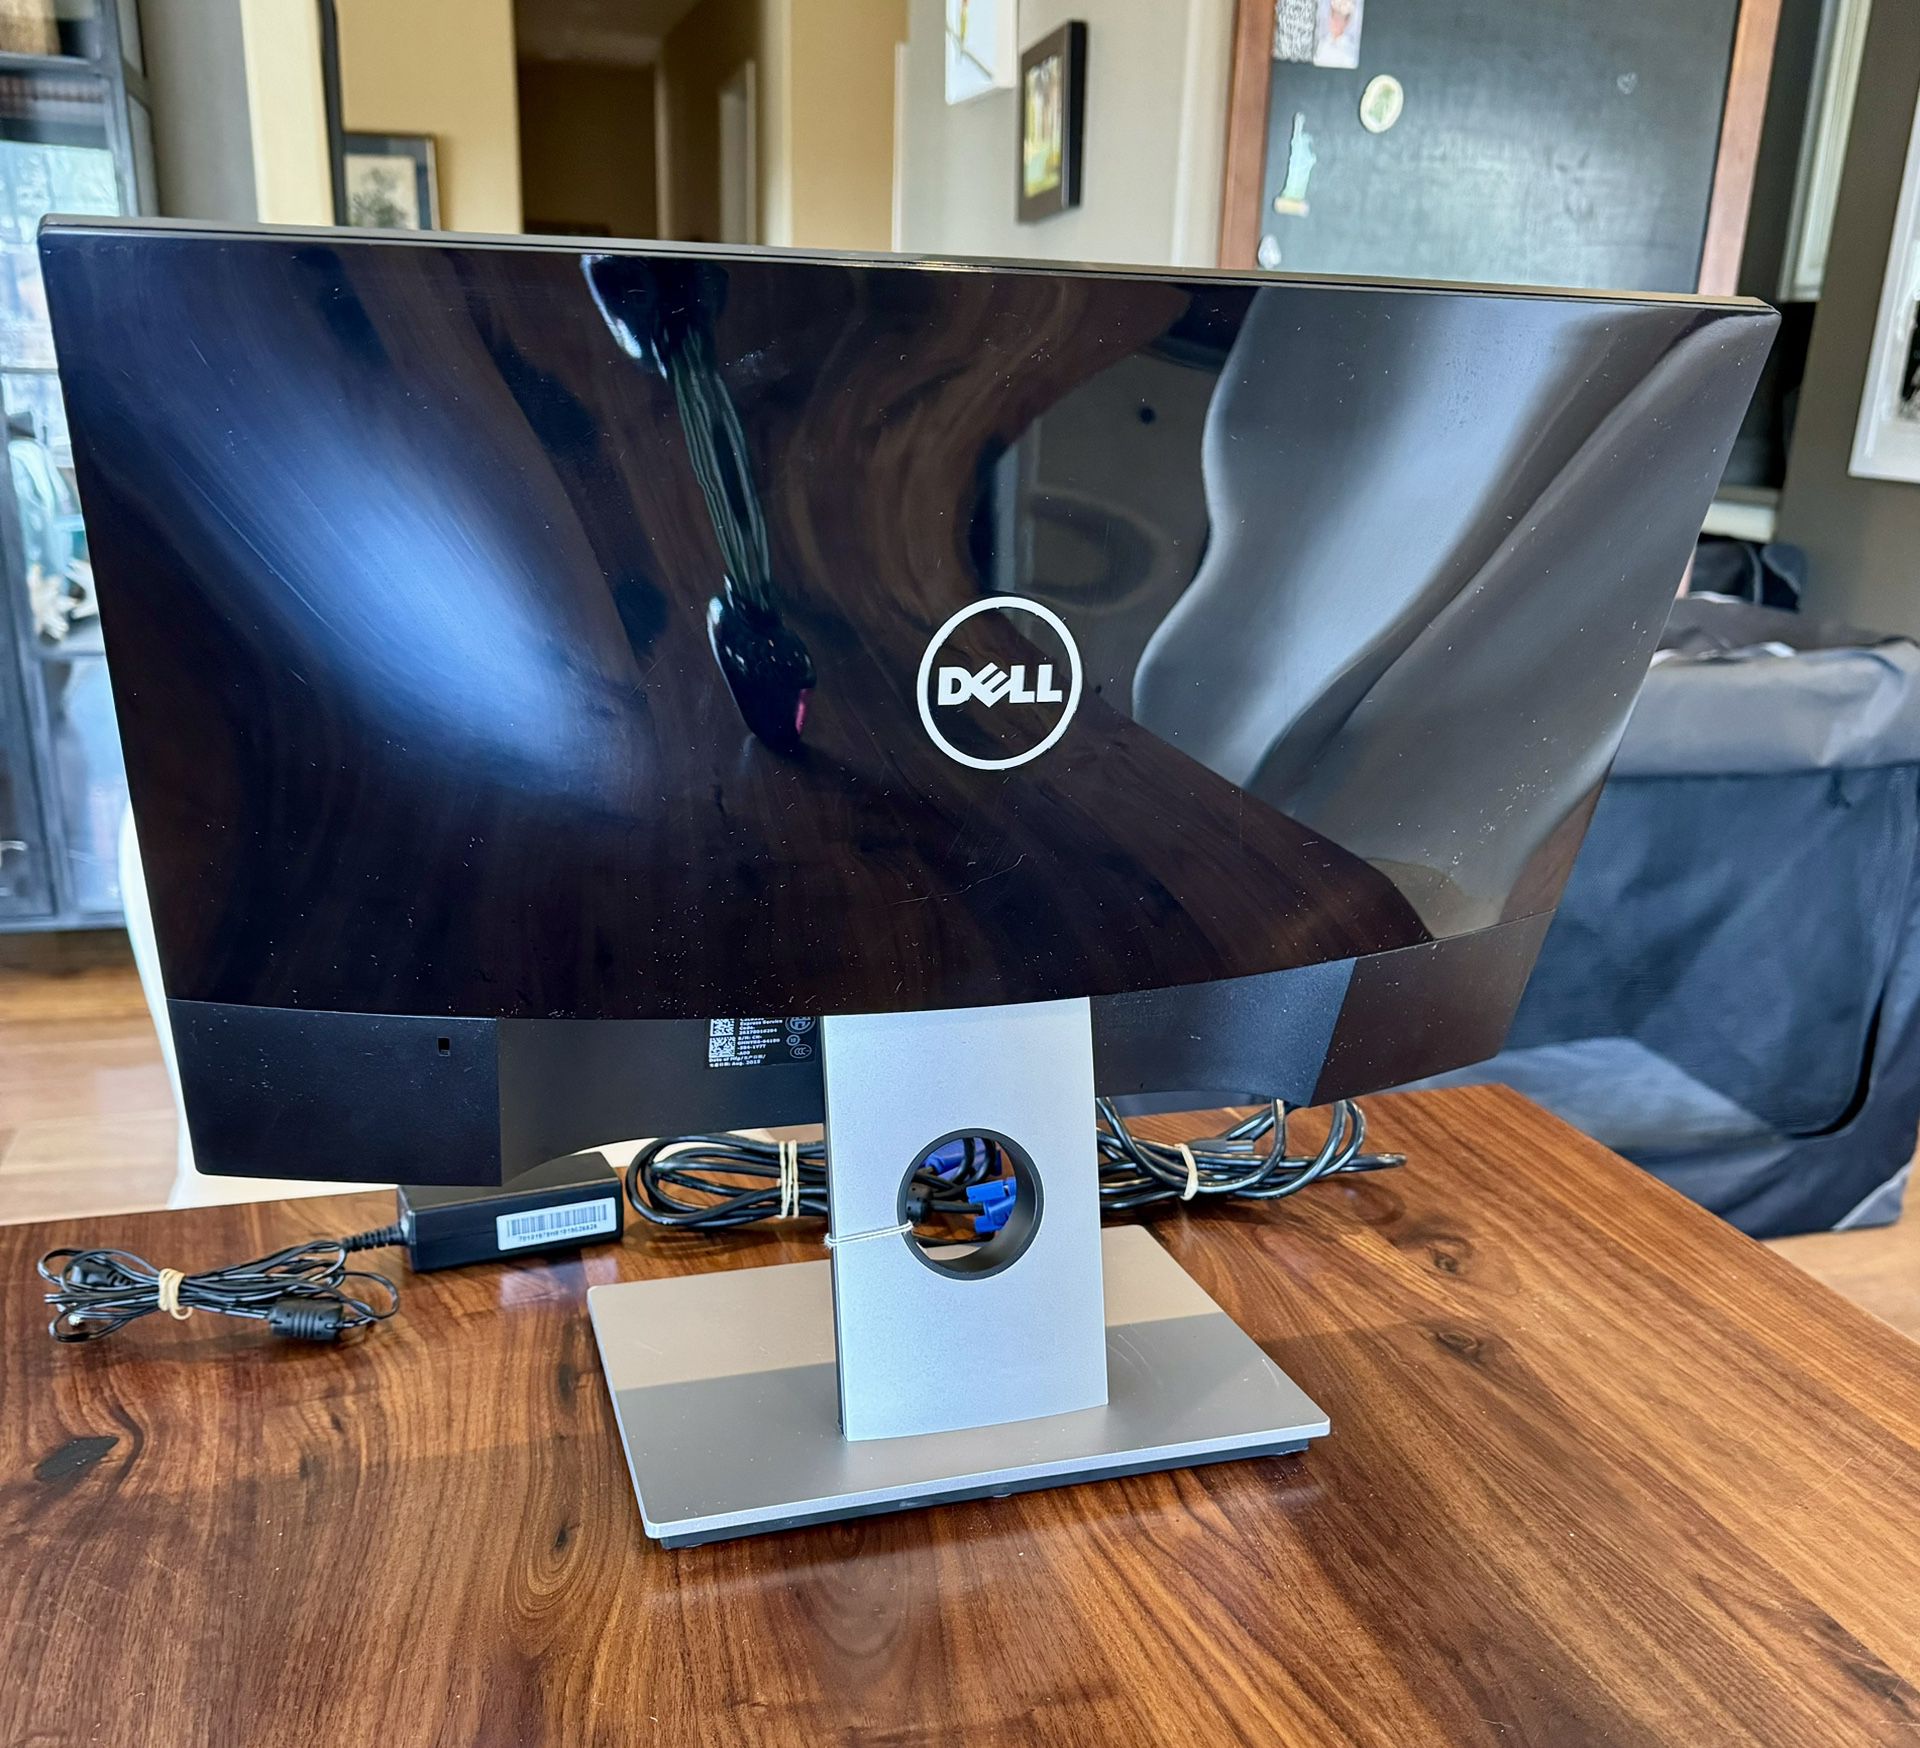 Dell 20.5” X 12” Desktop Computer Monitors (2)